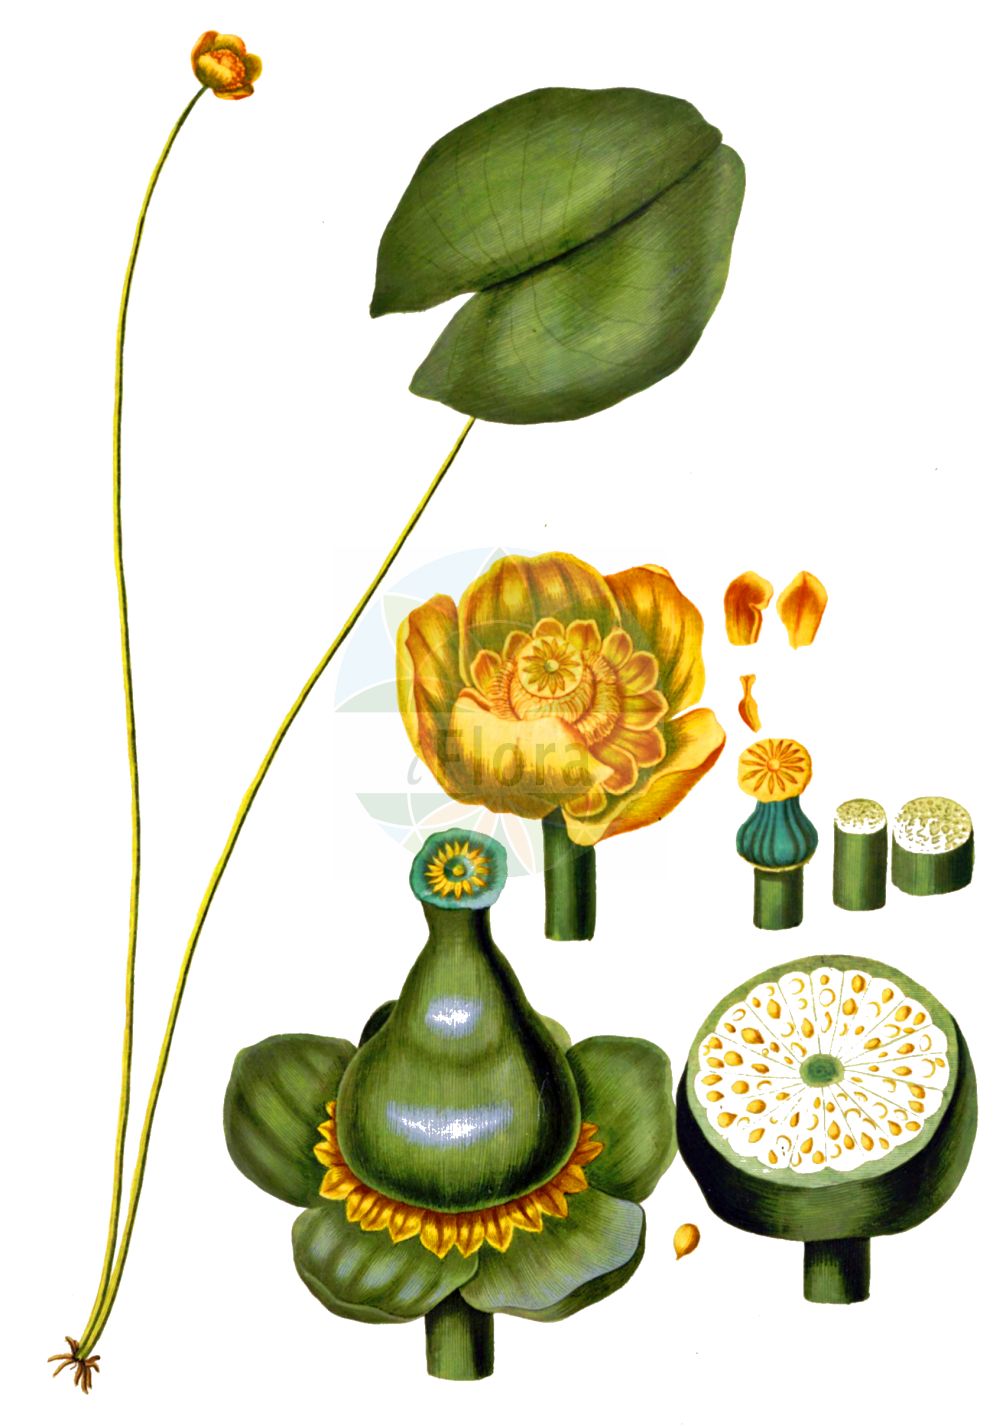 Historische Abbildung von Nuphar lutea (Gelbe Teichrose - Yellow Water-lily). Das Bild zeigt Blatt, Bluete, Frucht und Same. ---- Historical Drawing of Nuphar lutea (Gelbe Teichrose - Yellow Water-lily).The image is showing leaf, flower, fruit and seed.(Nuphar lutea,Gelbe Teichrose,Yellow Water-lily,Nenuphar luteum,Nuphar lutea,Nuphar sericea,Nymphaea lutea,Nymphozanthus luteus,Gelbe Teichrose,Grosse Teichrose,Mummel,Yellow Water-lily,Cow Lily,Spatterdock,Yellow Pond Lily,Nuphar,Teichrose,Pond-lily,Nymphaeaceae,Seerosengewaechse,Water-lily family,Blatt,Bluete,Frucht,Same,leaf,flower,fruit,seed,Oeder (1761-1883))